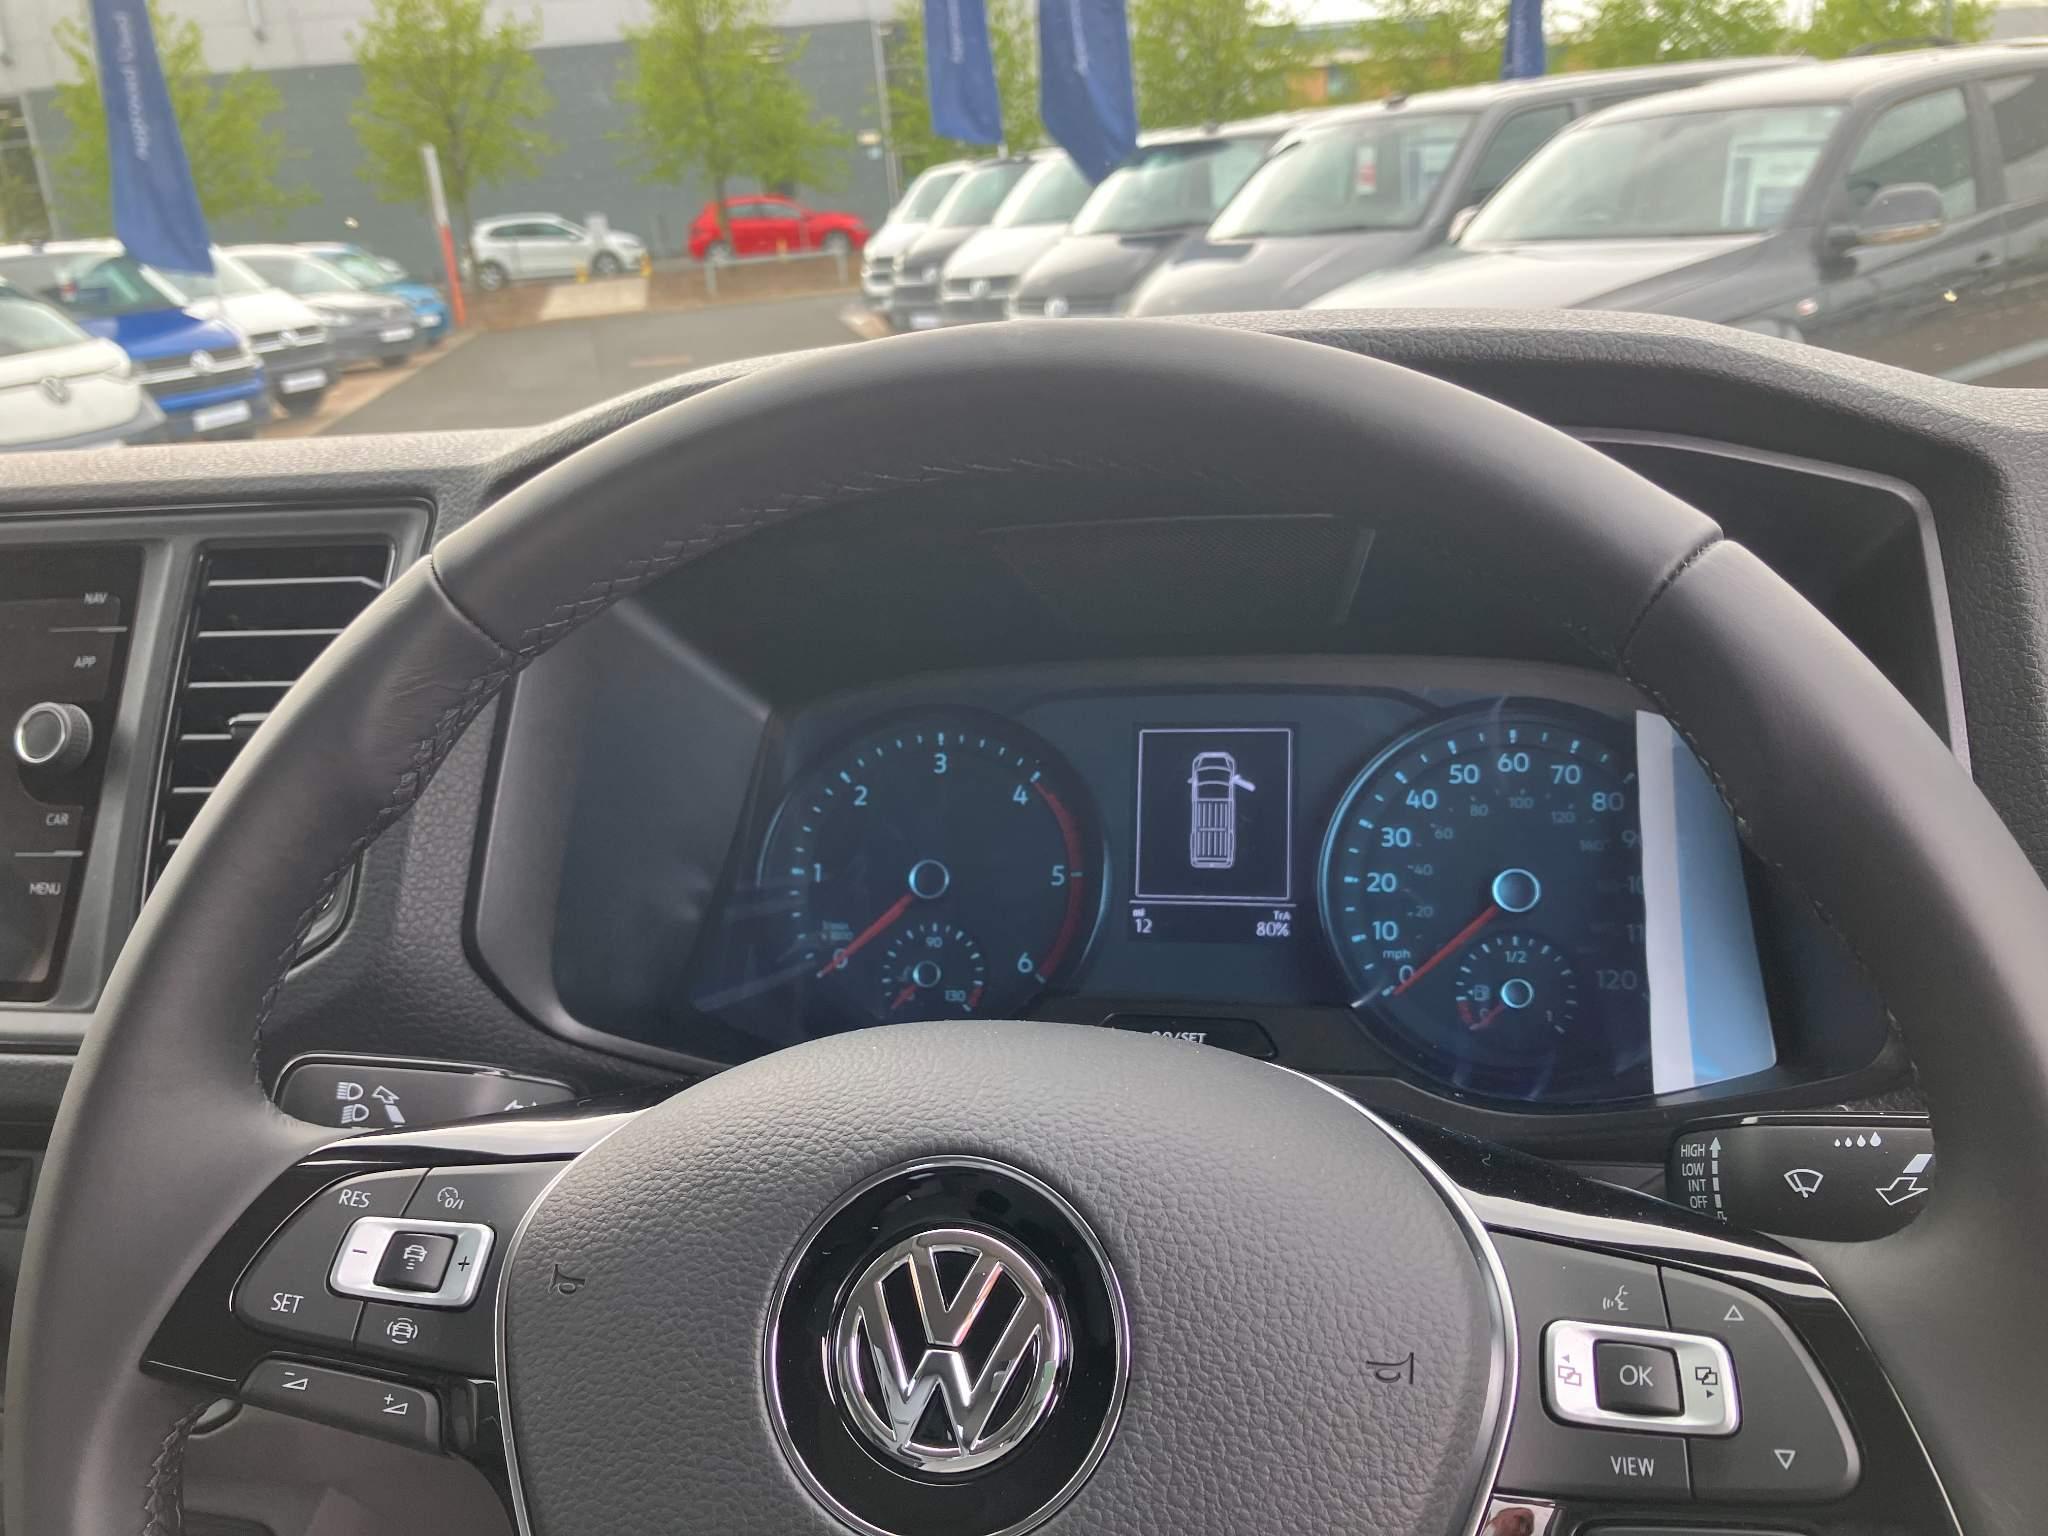 Volkswagen Grand California for sale from Western Volkswagen Van Centre